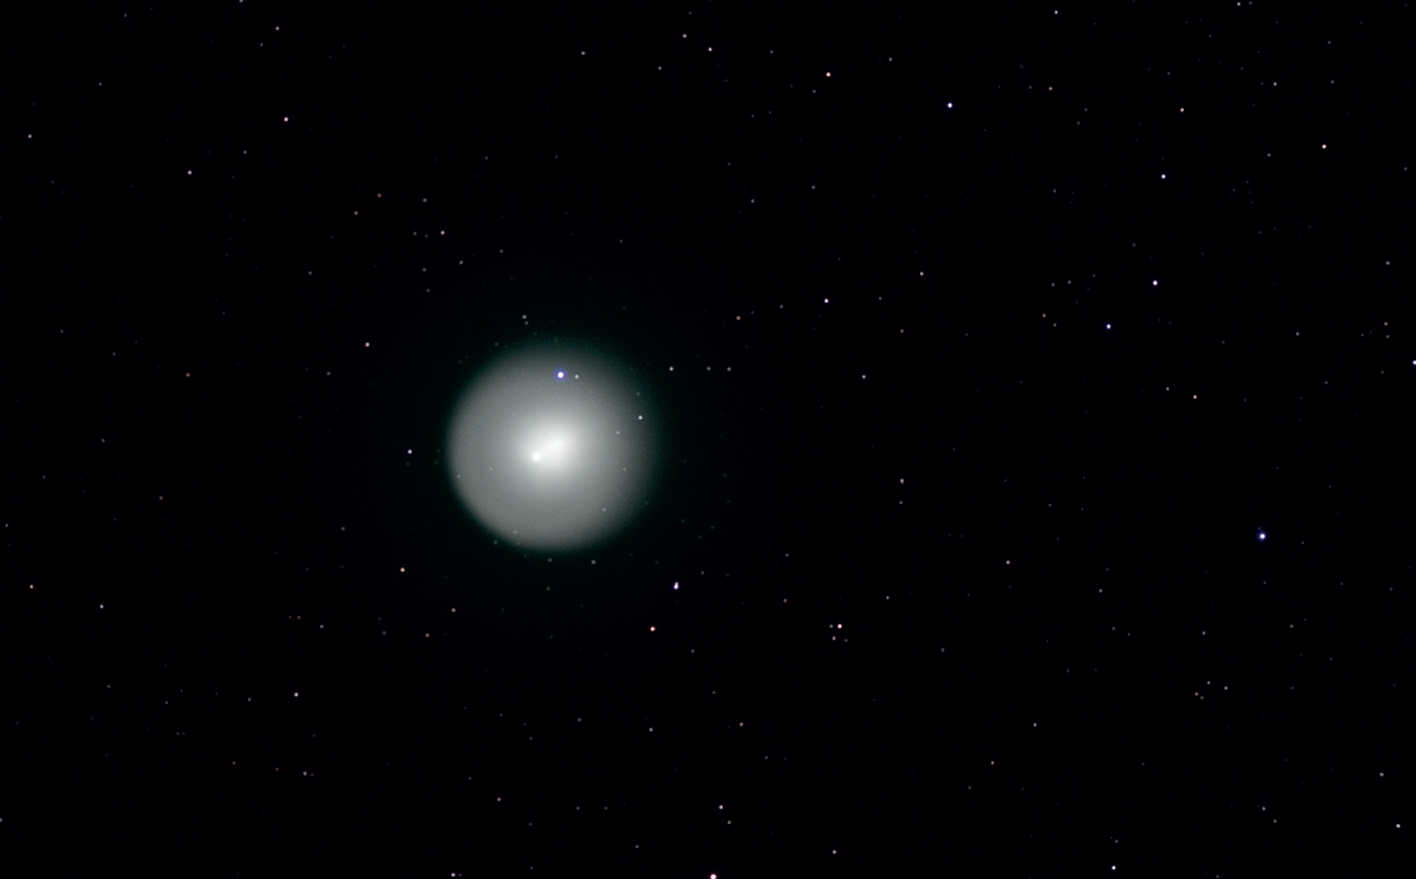 În 2007, cometa cu apariție periodică 17P (Holmes) a dominat cerul toamnei. Forma și dimensiunea clară a capului cometei pot fi observate în această imagine alb-negru, care a fost realizată la 1 noiembrie 2007 cu un aparat de fotografiat CCD răcit montat pe un Takahashi FS-102. Chiar dacă fotografiile tipice cu comete sunt color, subliniindu-le strălucirea verde, și această fotografie alb-negru are un farmec special. U. Dittler 